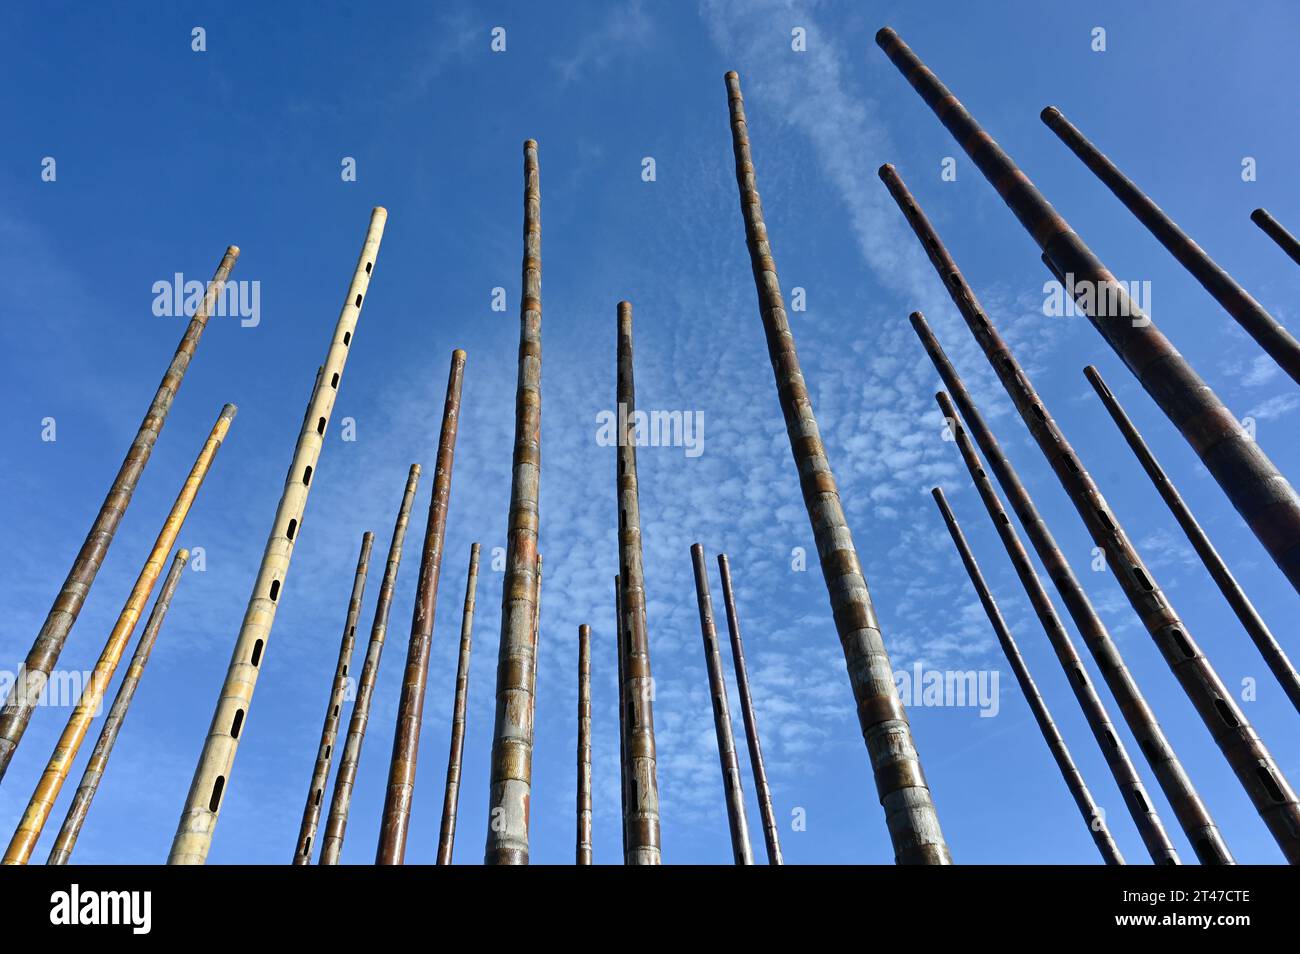 L'orgue à vent du monde à Vlissingen est une sculpture sonore composée de tubes de bambou placés verticalement dans lesquels des trous ont été faits Banque D'Images